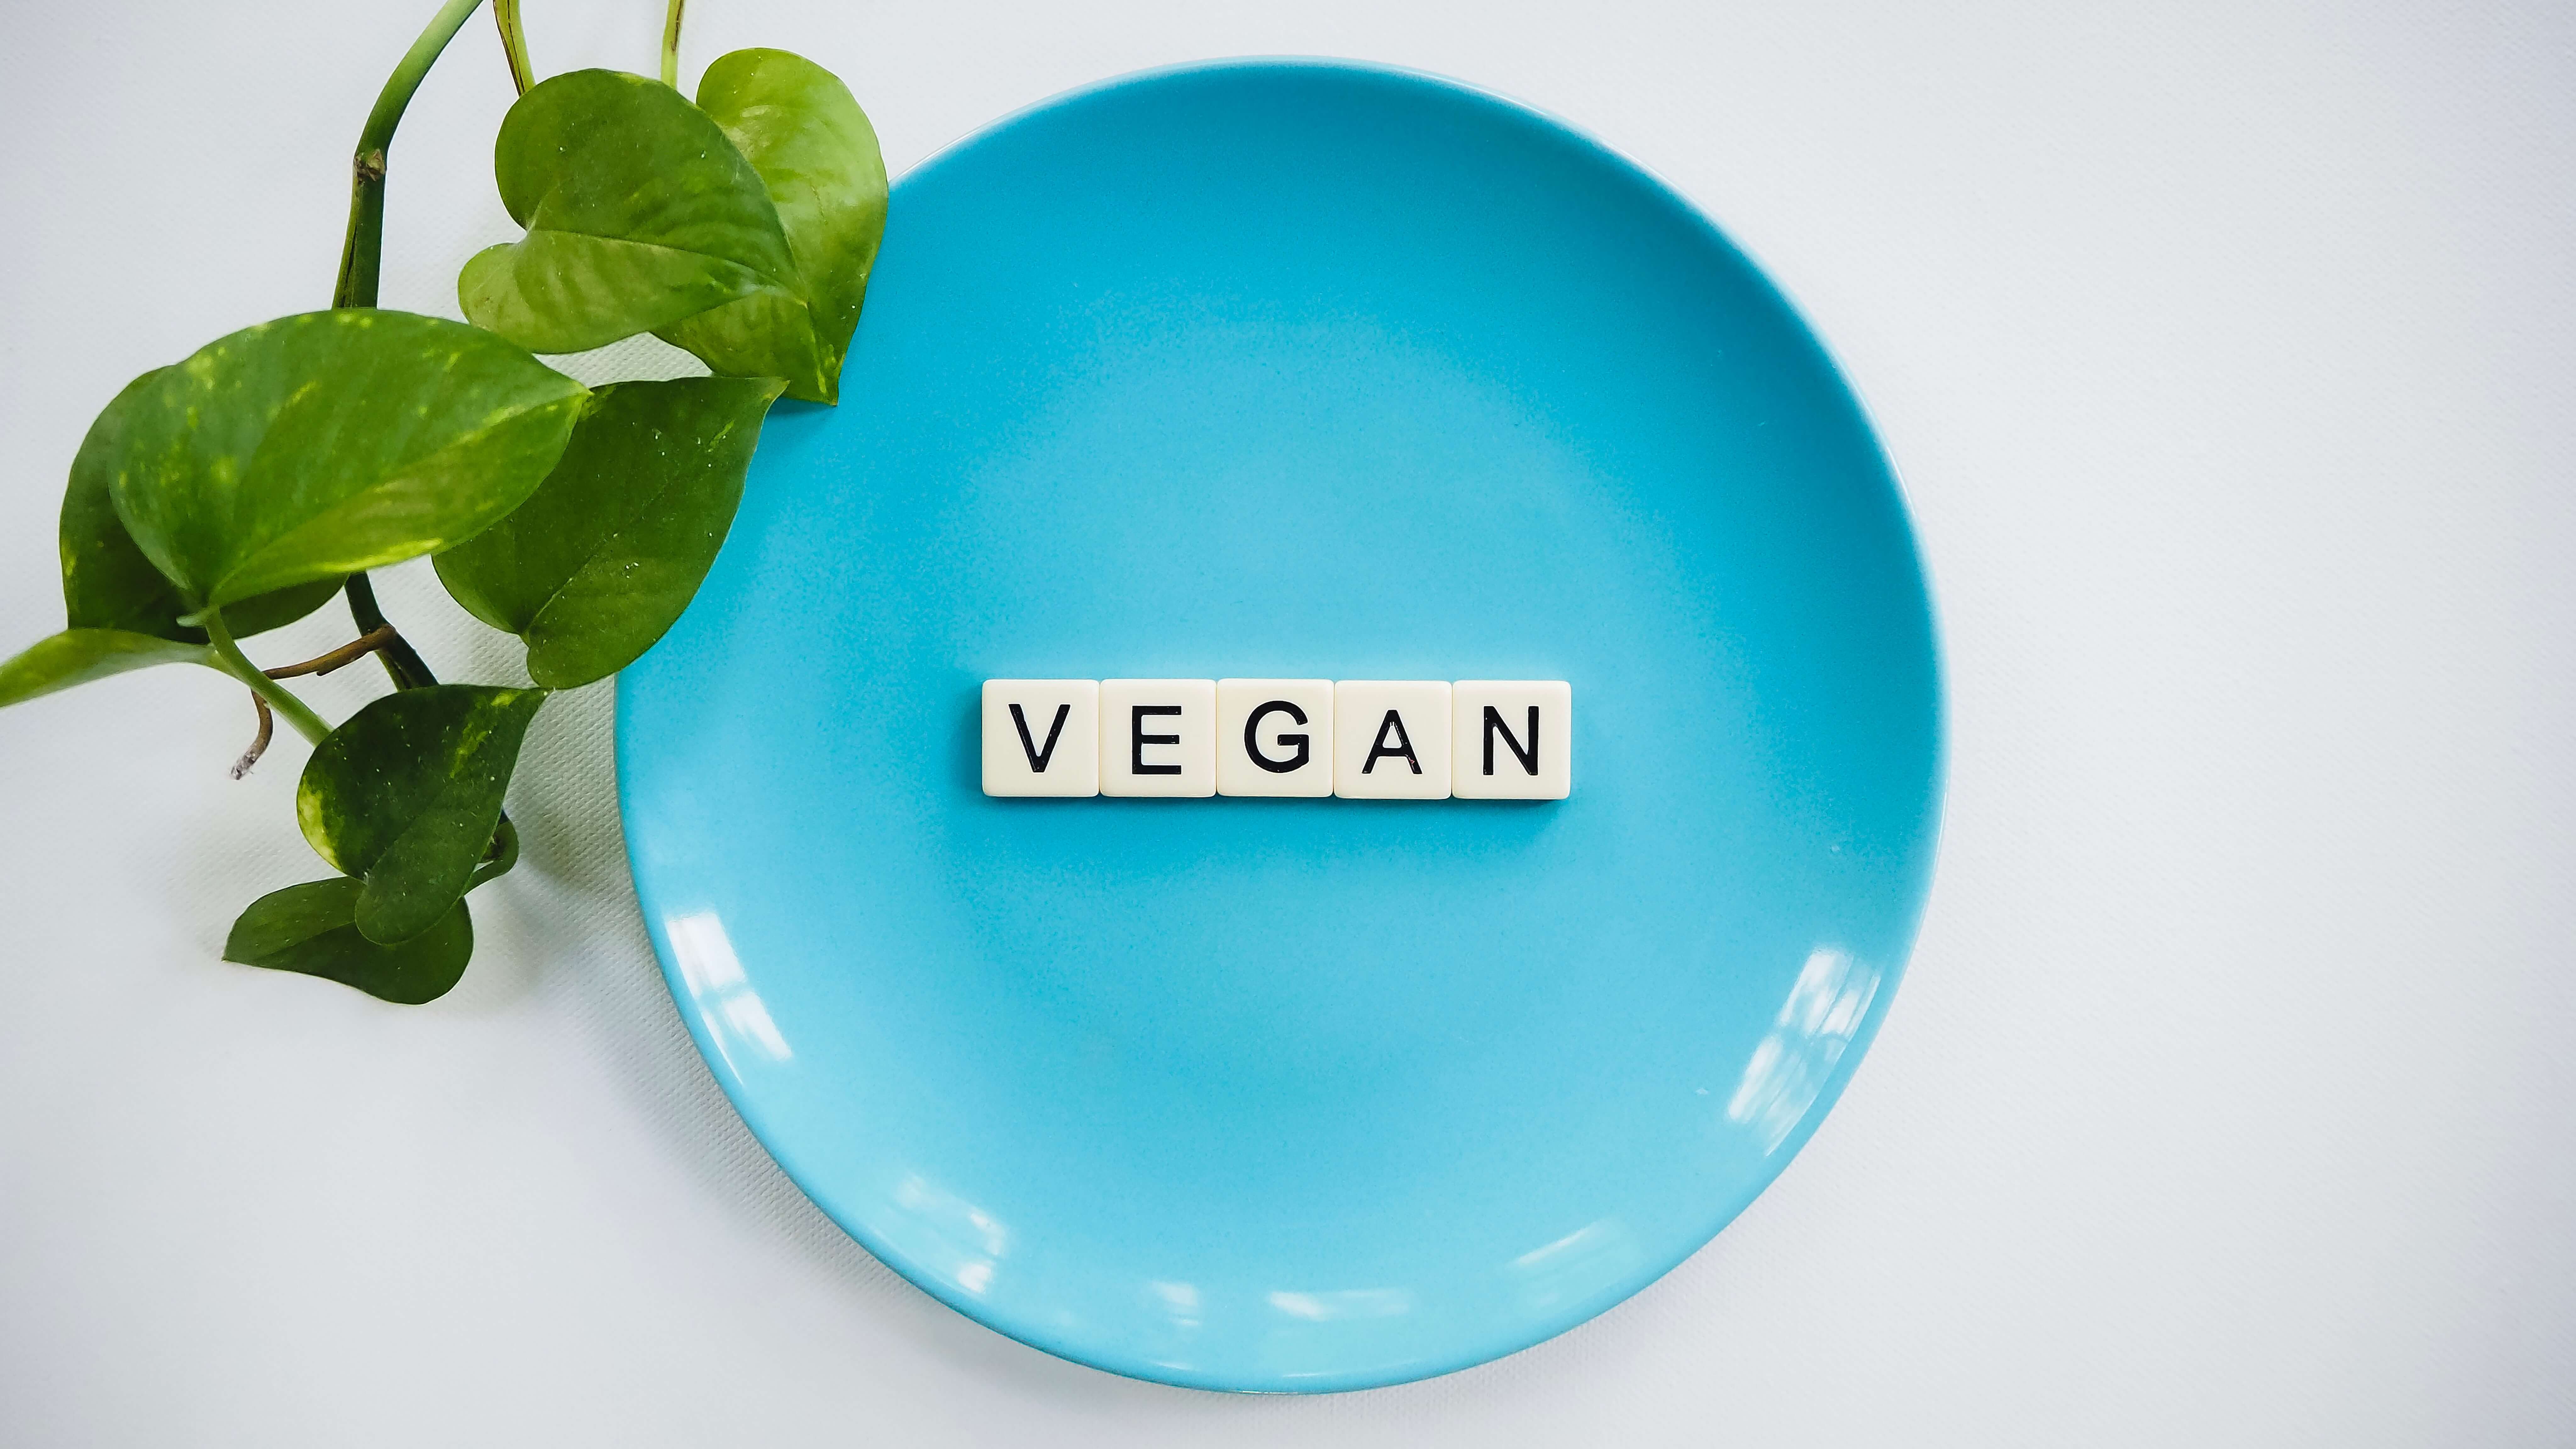 Ein blauer Teller mit Scrabble-Buchstaben, die das Wort "VEGAN" bilden, neben einer grünen Pflanze als Symbol für vegane Ernährung.